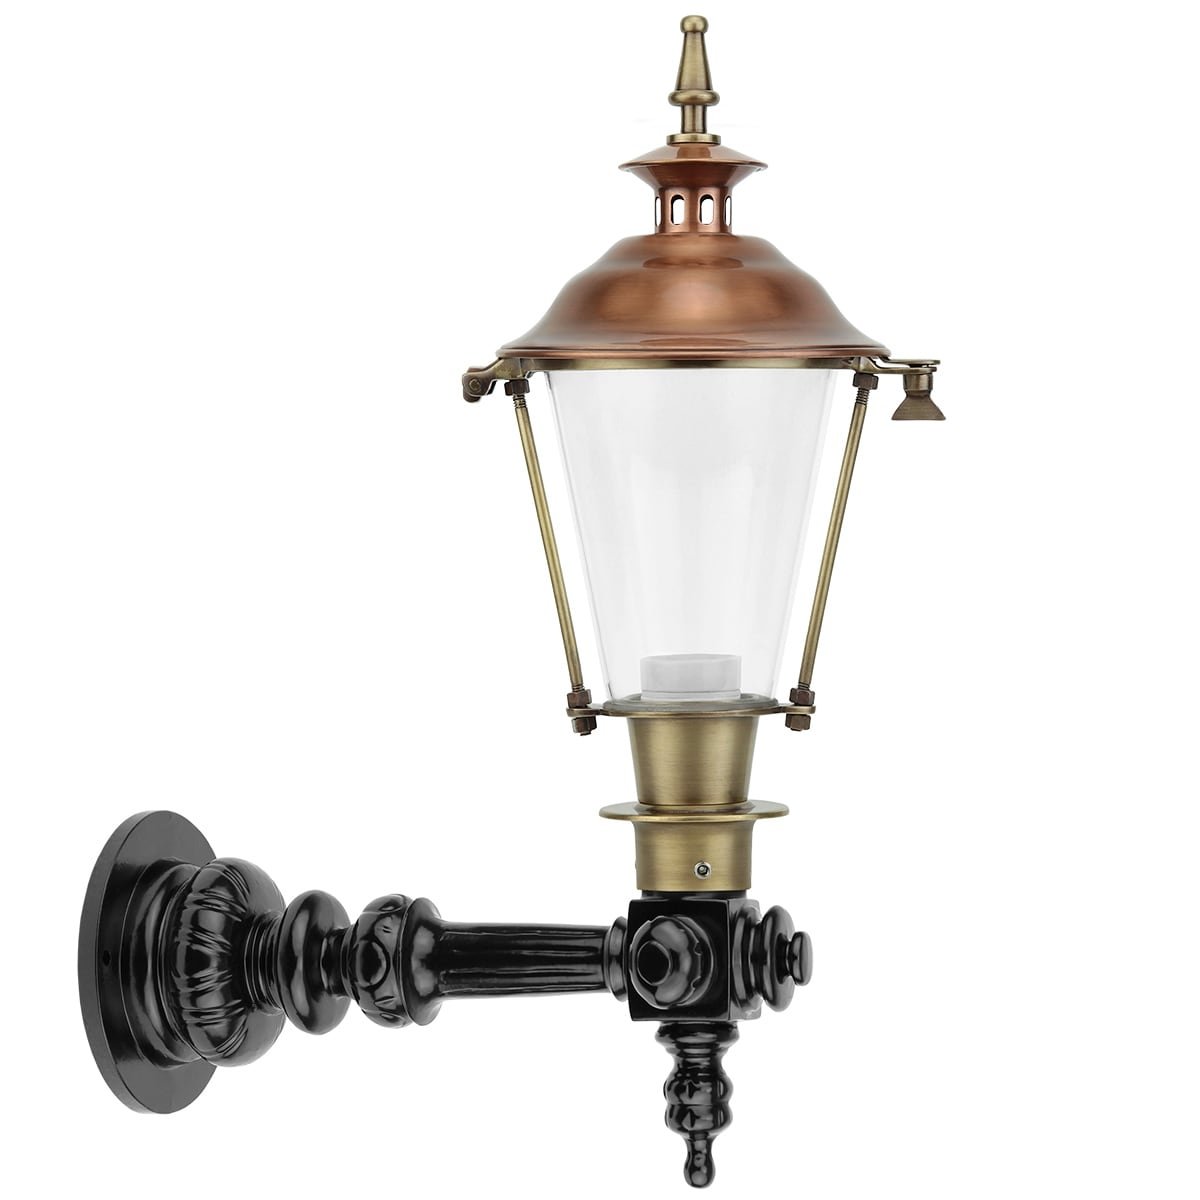 Lanternevæg udvendig Caluna kobber - 50 cm